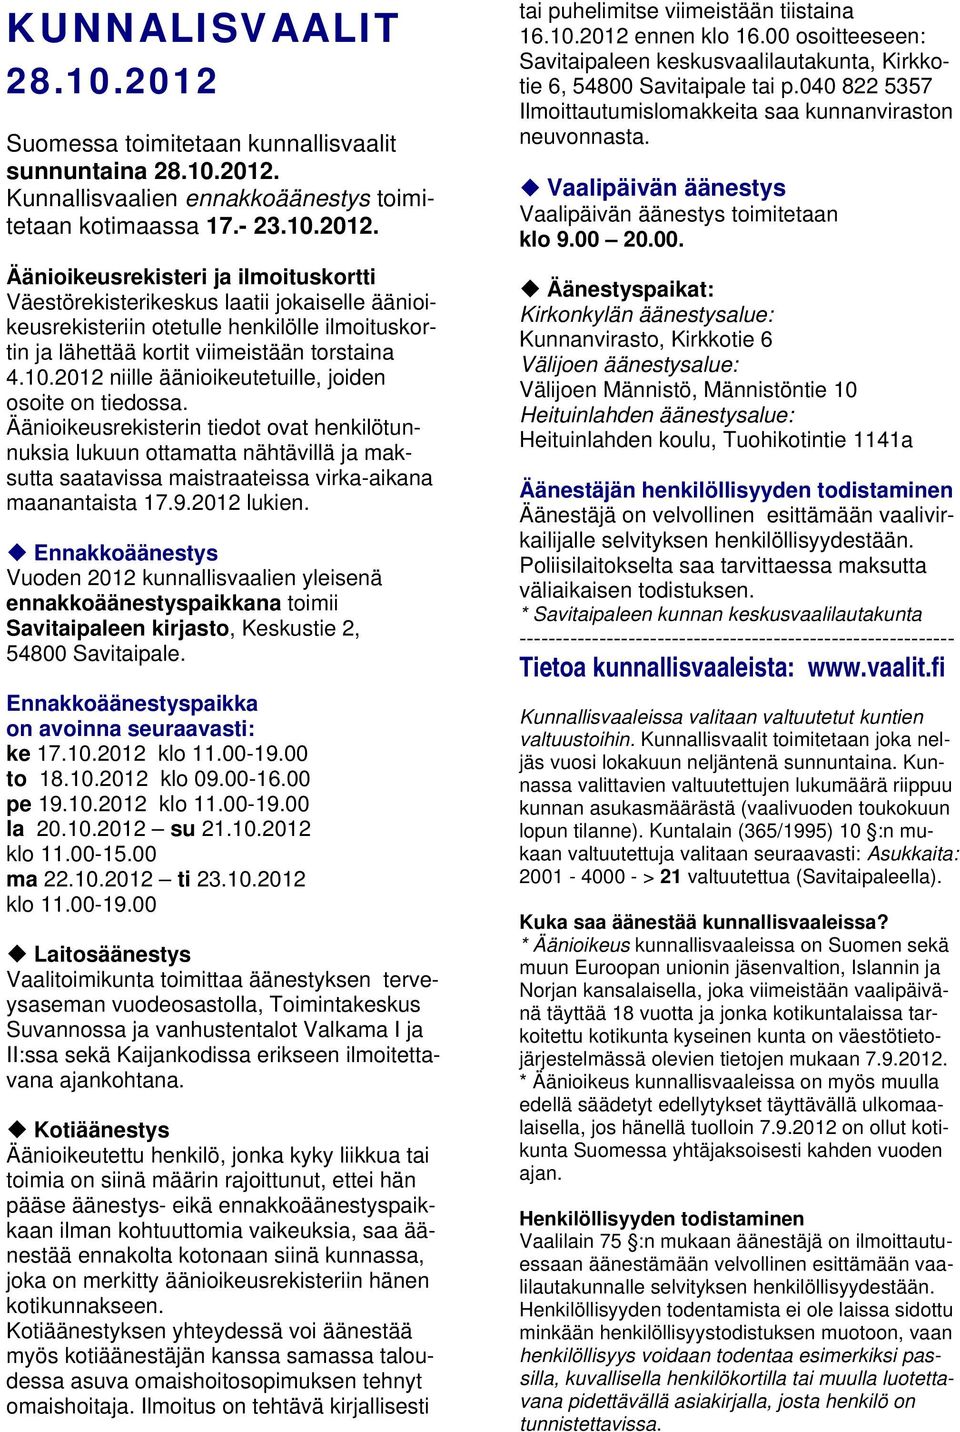 Kunnallisvaalien ennakkoäänestys toimitetaan kotimaassa 17.- 23.10.2012.